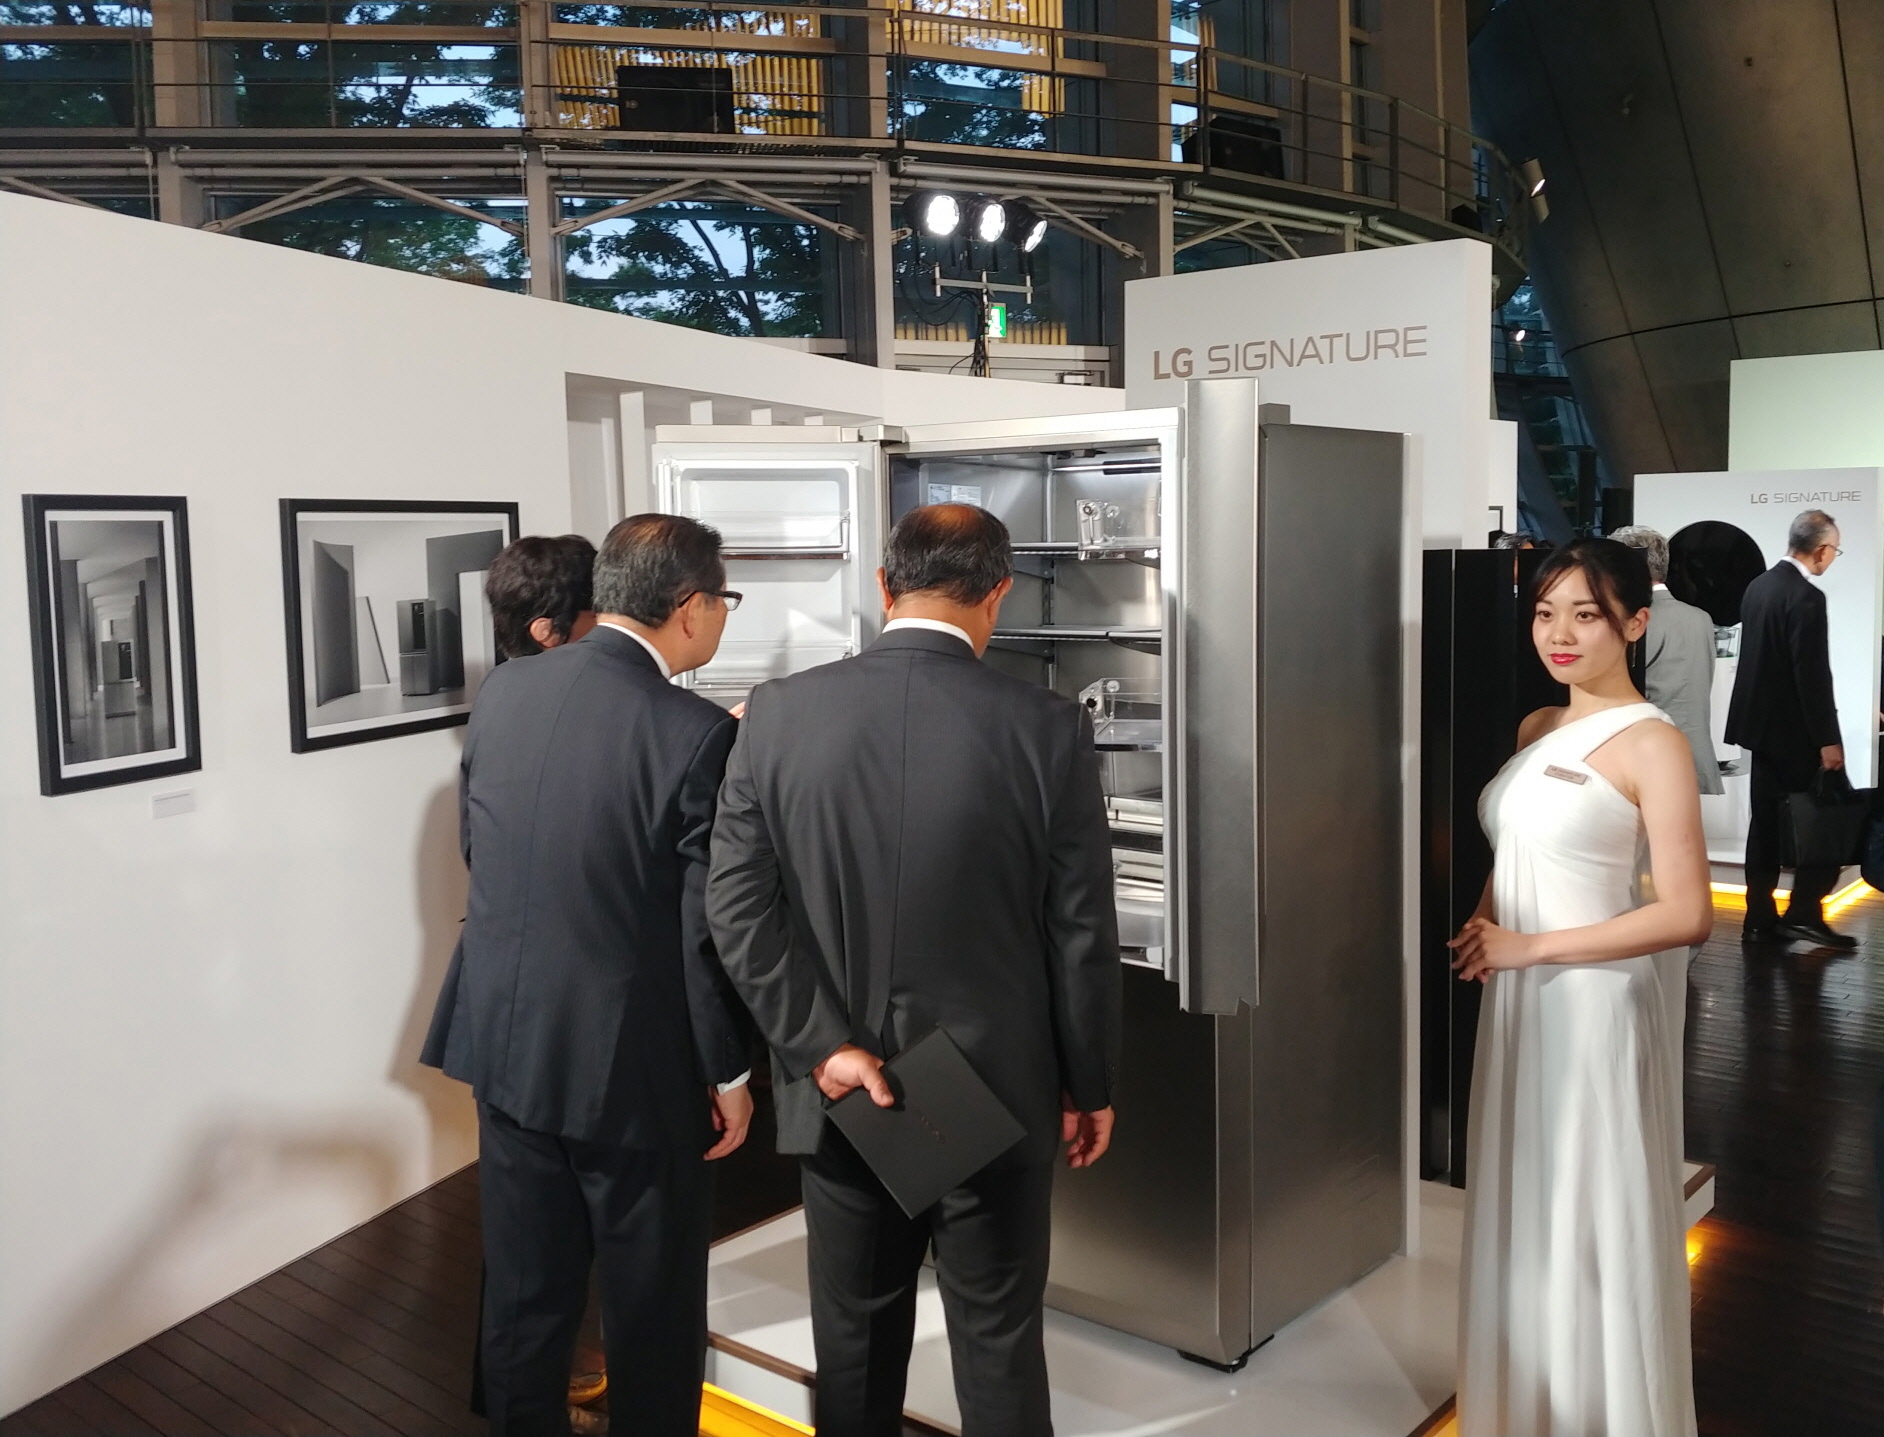 LG전자가 4일 일본 도쿄 국립신미술관에서 현지 거래선, 기자, 오피니언 리더 등 약 250 명을 초청해 ‘LG 시그니처’ 출시행사를 열었다. 참석자들이 초프리미엄 'LG 시그니처'를 살펴보고 있다.